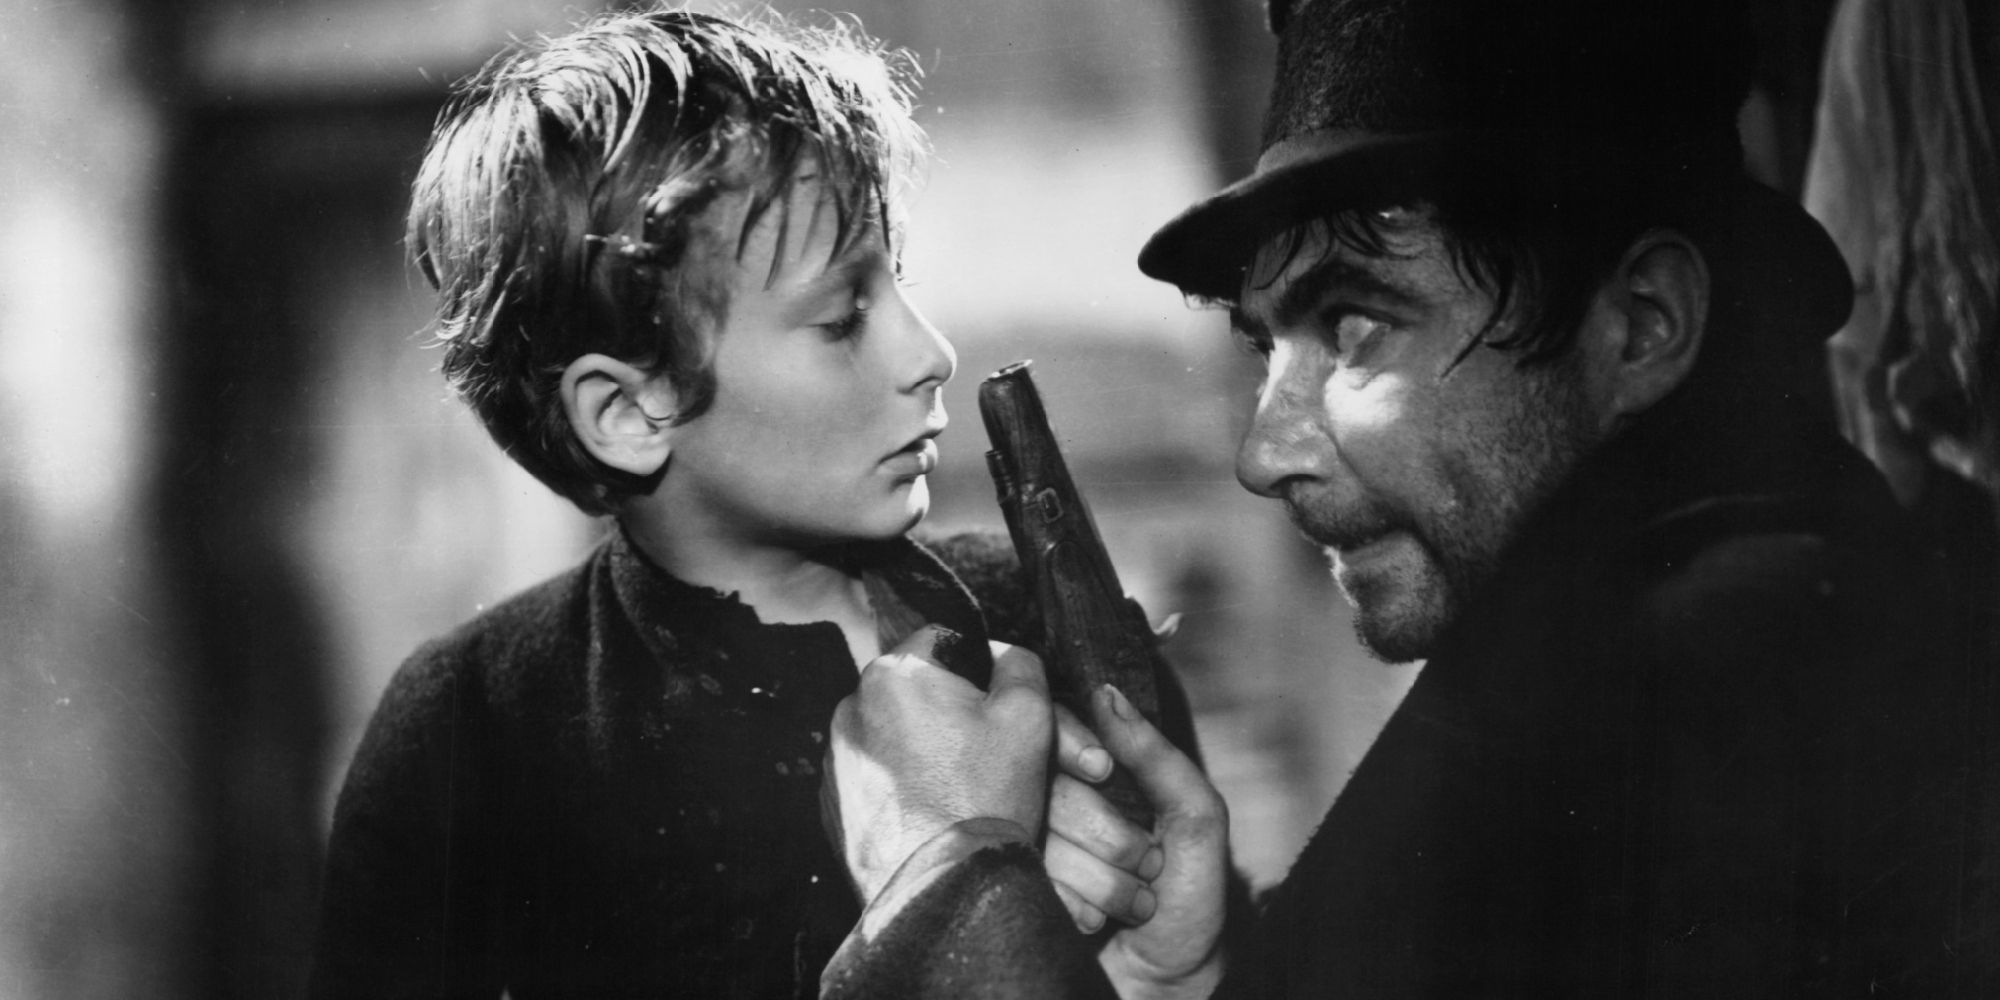 Oliver Twist - 1948